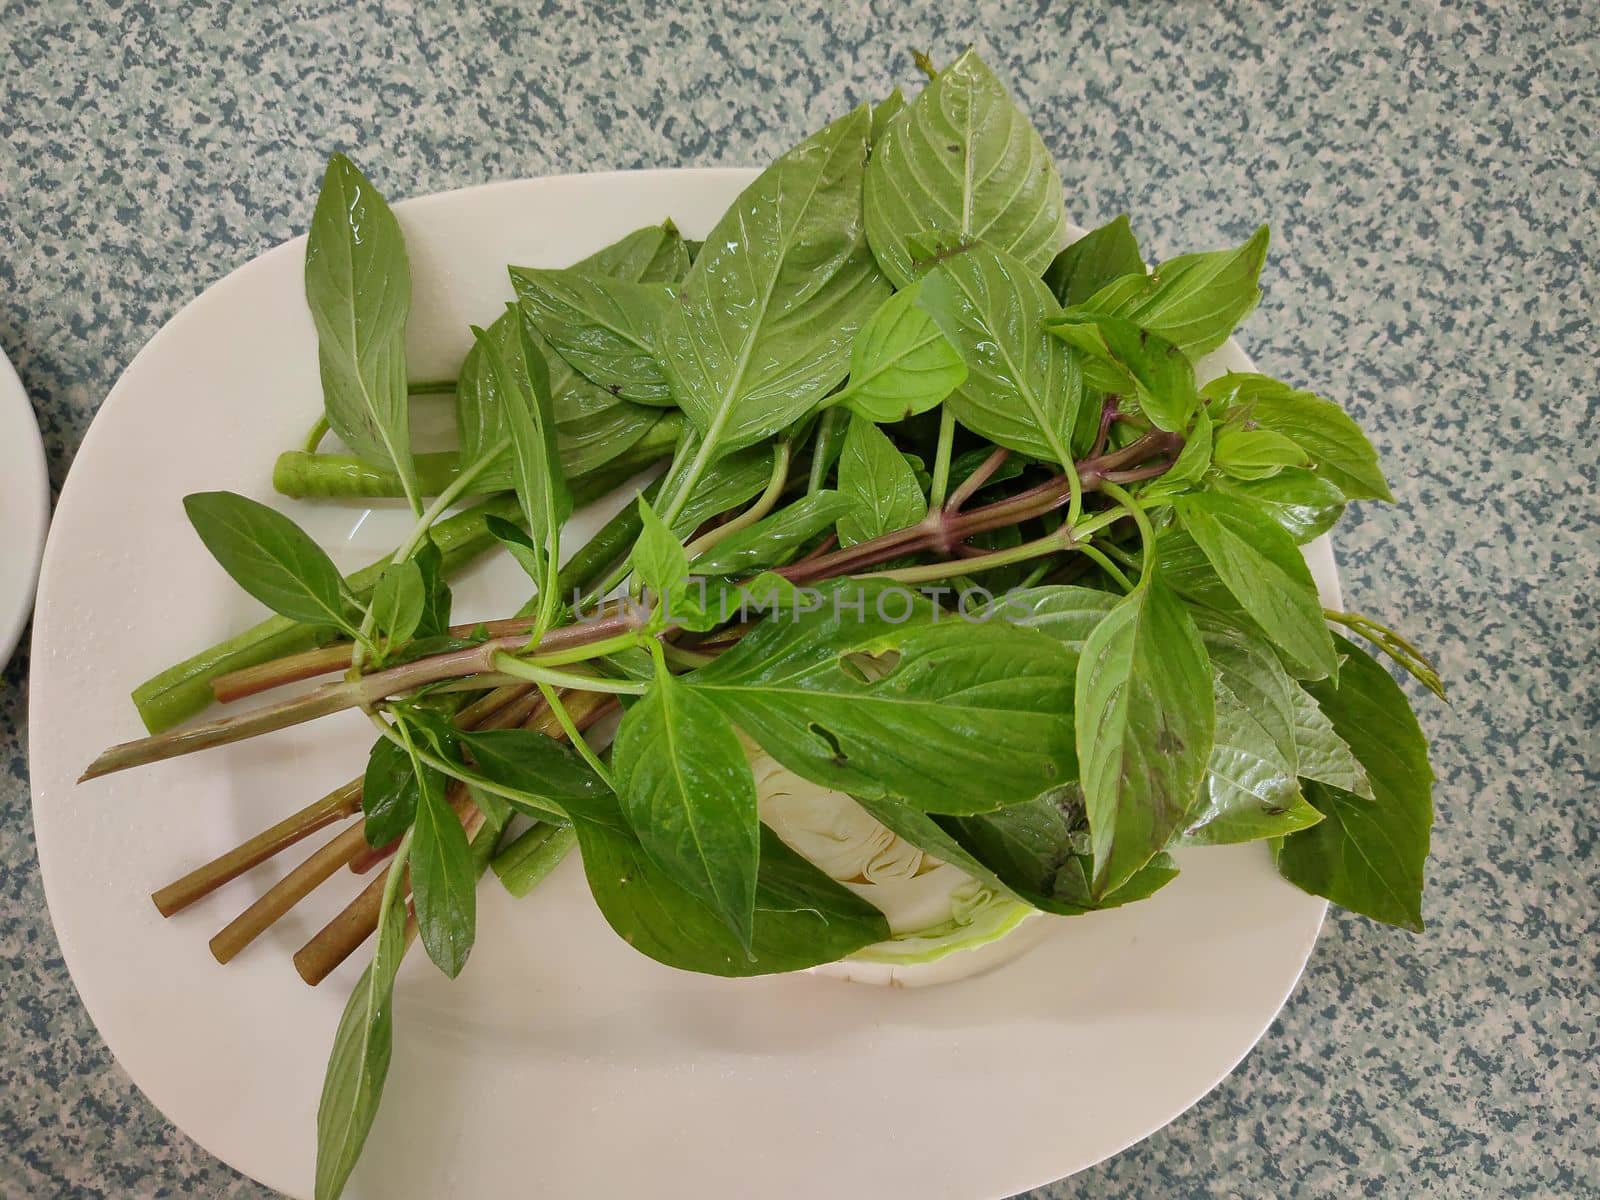 Sweet basil leaves as nice natural food background on disk by peerapixs